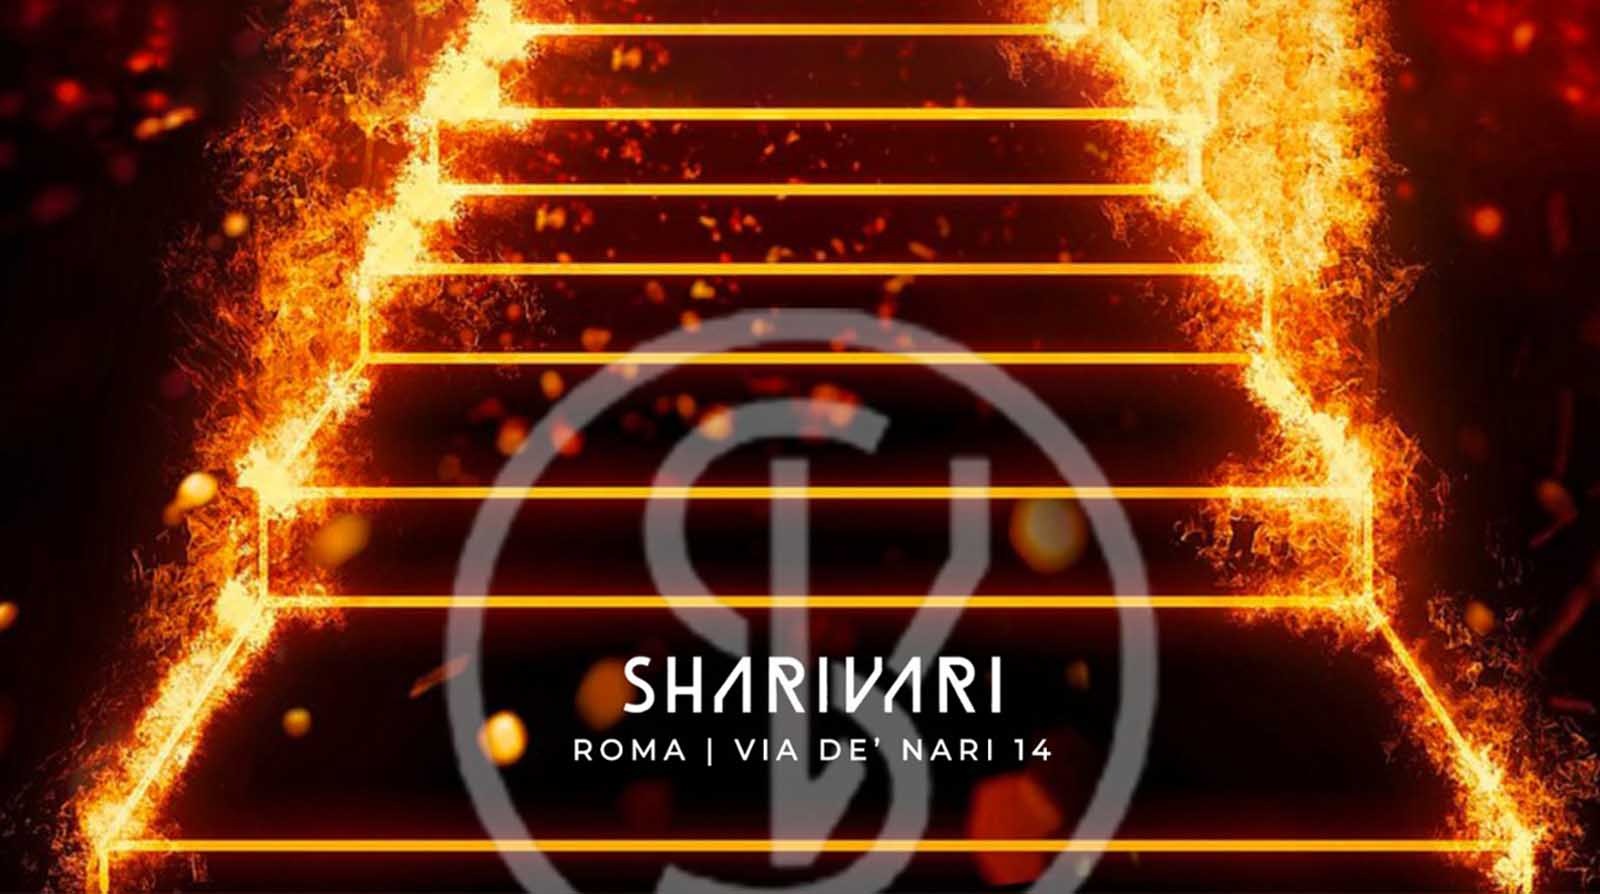 Sharivari - Dal Martedì alla Domenica - Da lunedì 15 novembre 2021 a mercoledì 30 novembre 2022